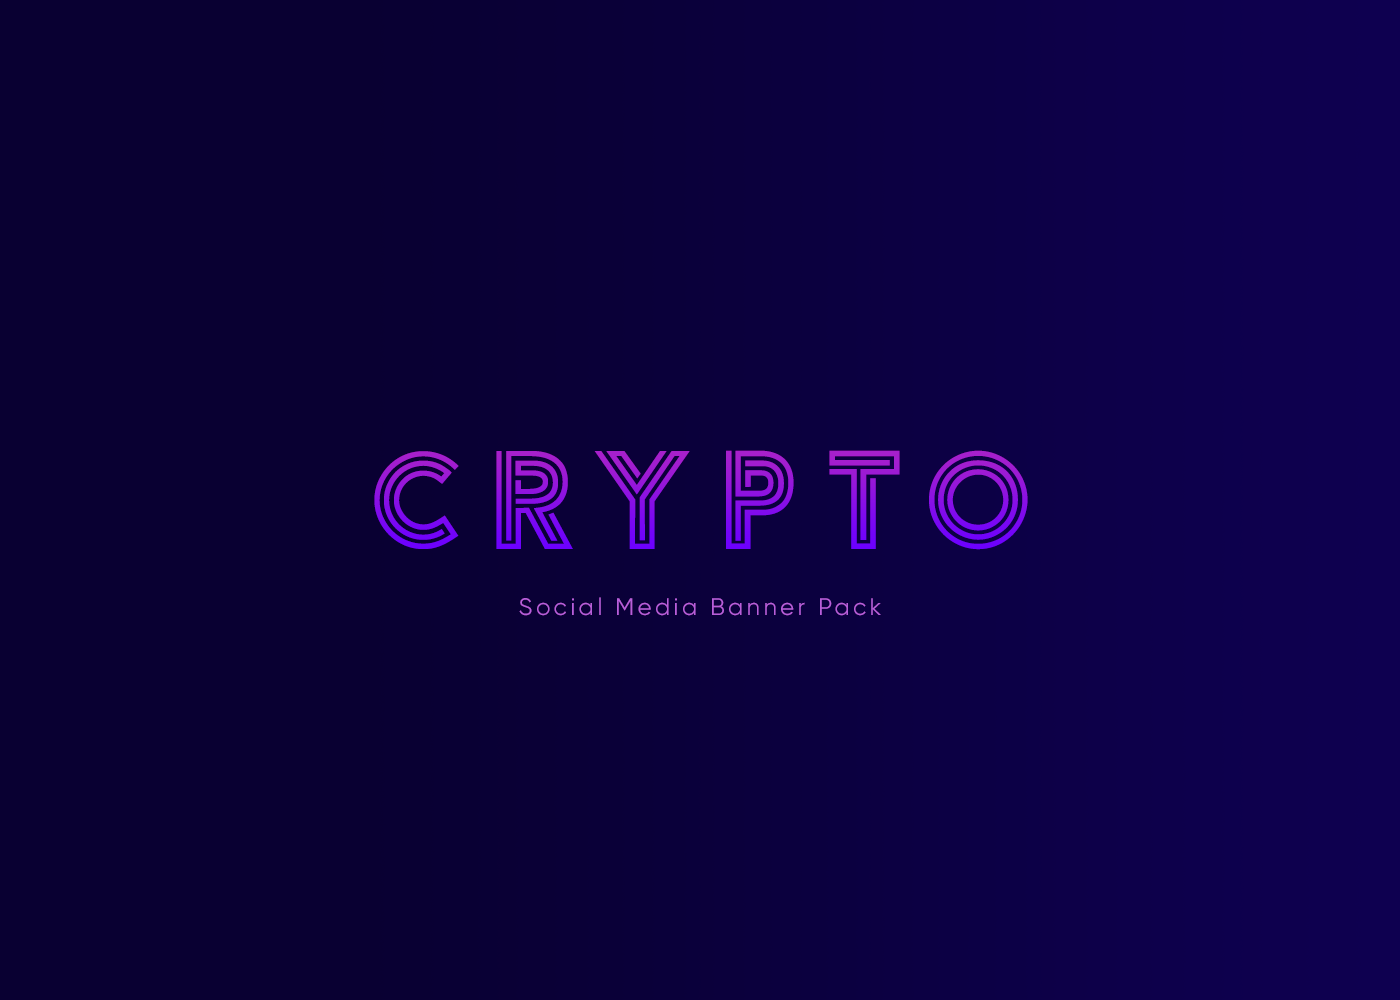 cryptocurrency bitcoin coin token blockchain crypto Social Media Banner social media 2019 trend design Startup